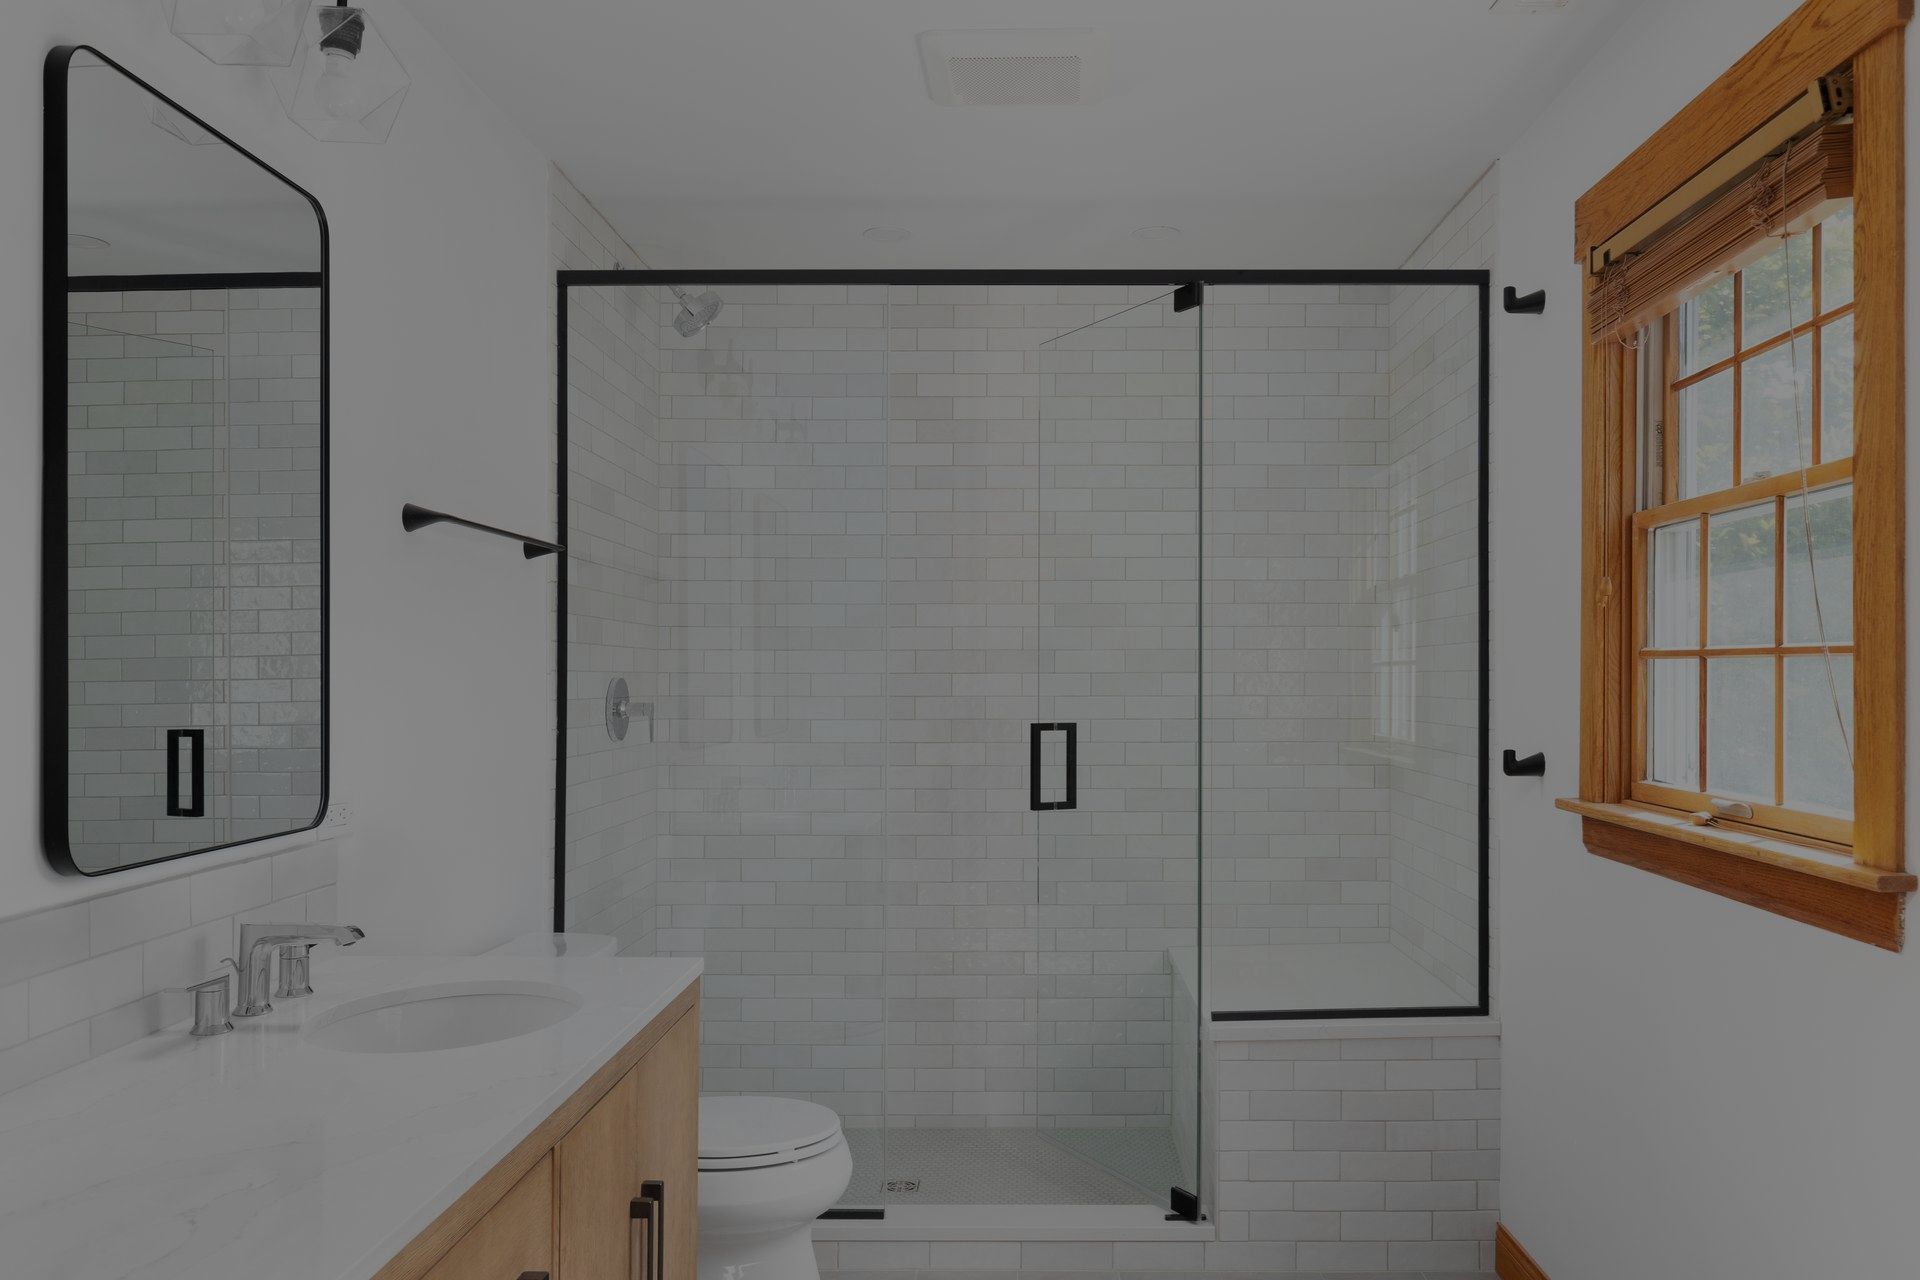 Un baño con inodoro, lavabo, espejo y cabina de ducha.